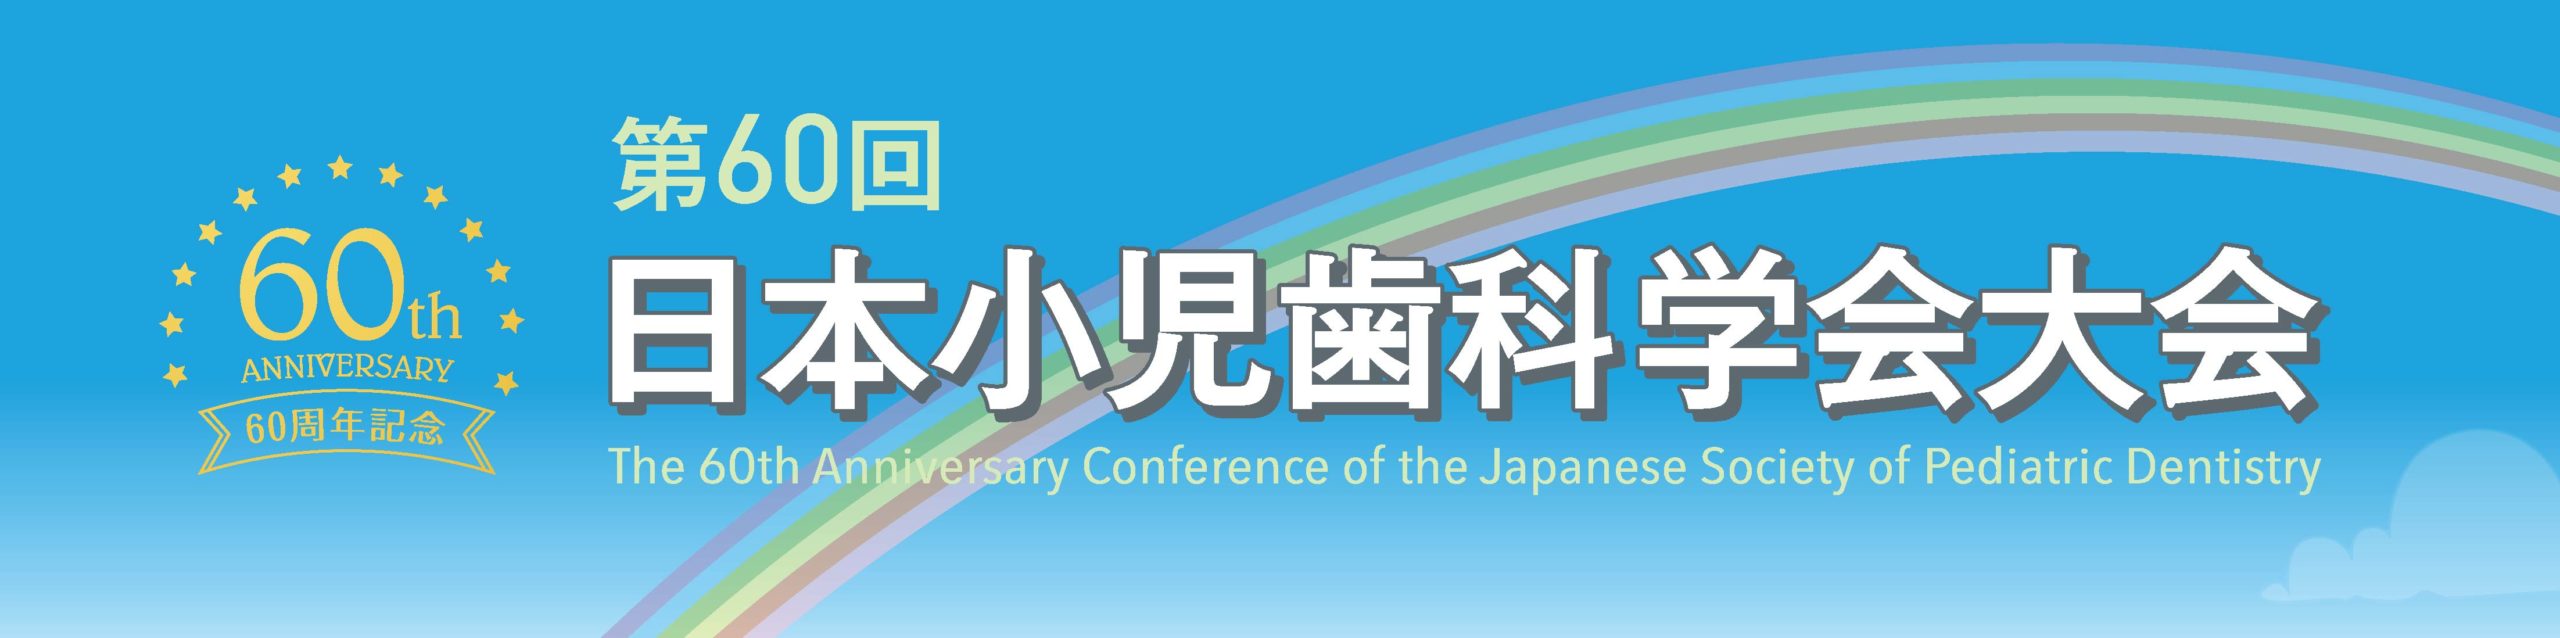 第60回日本小児歯科学会大会